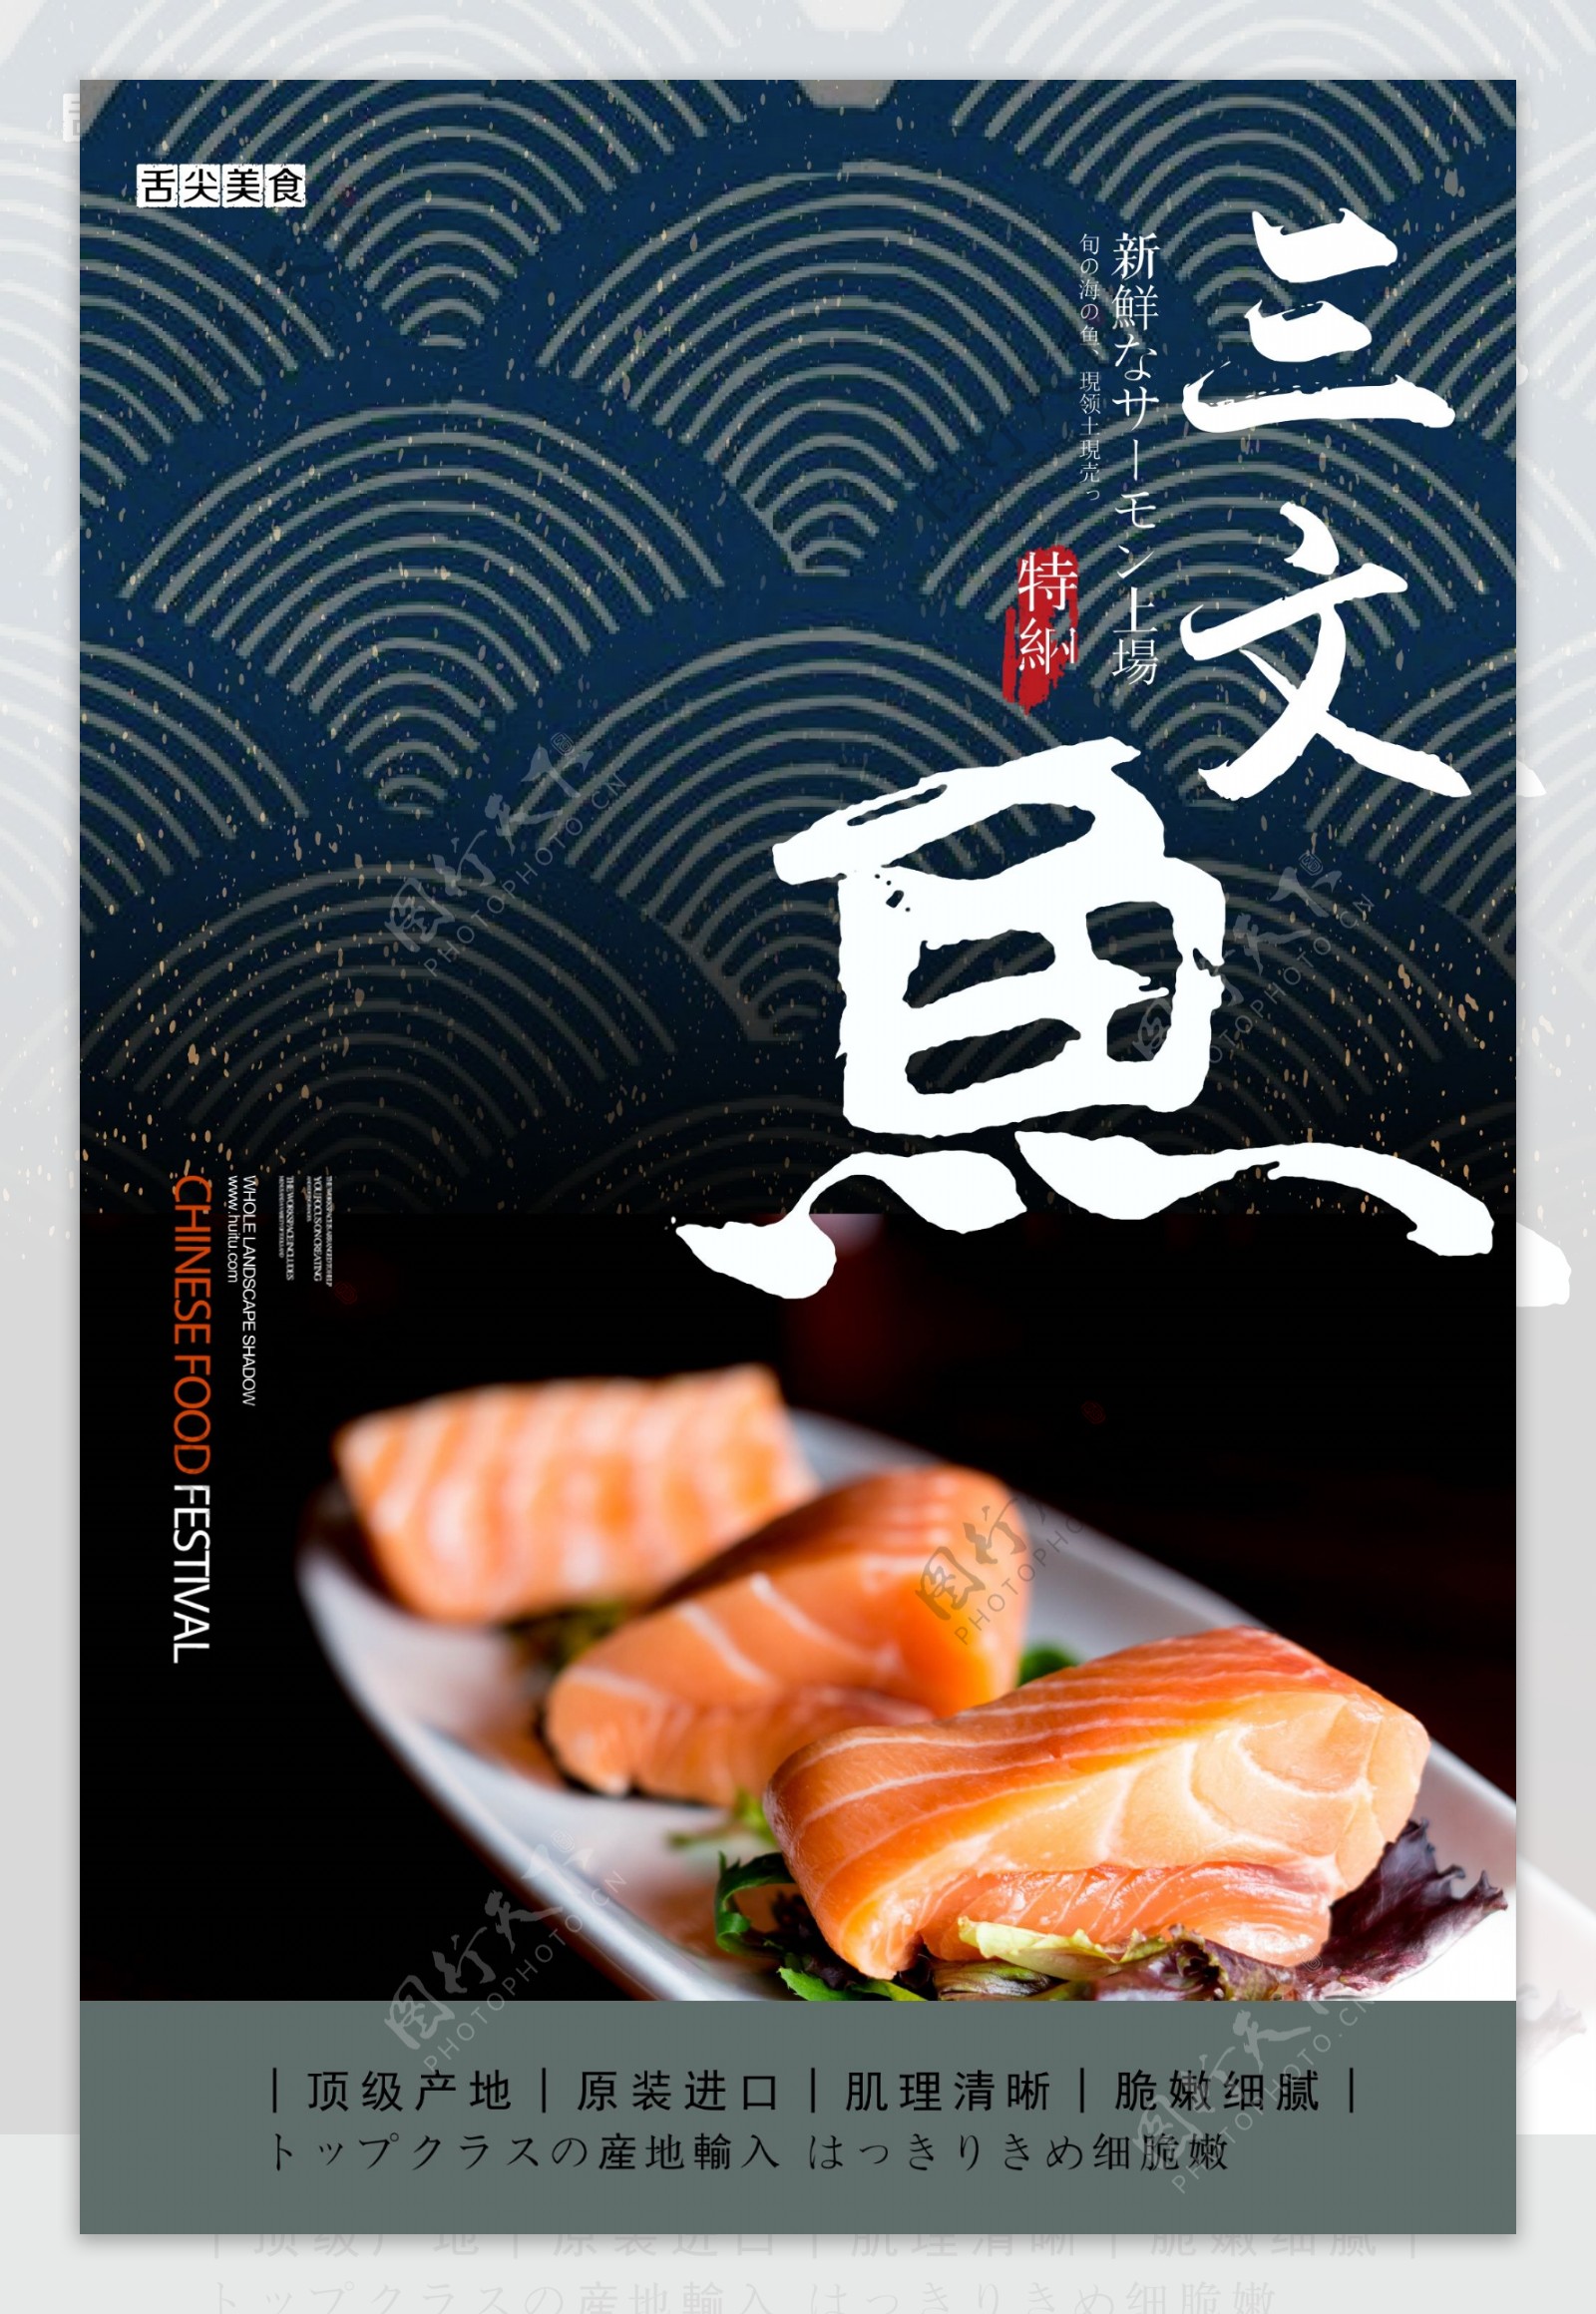 三文鱼产品宣传海报设计